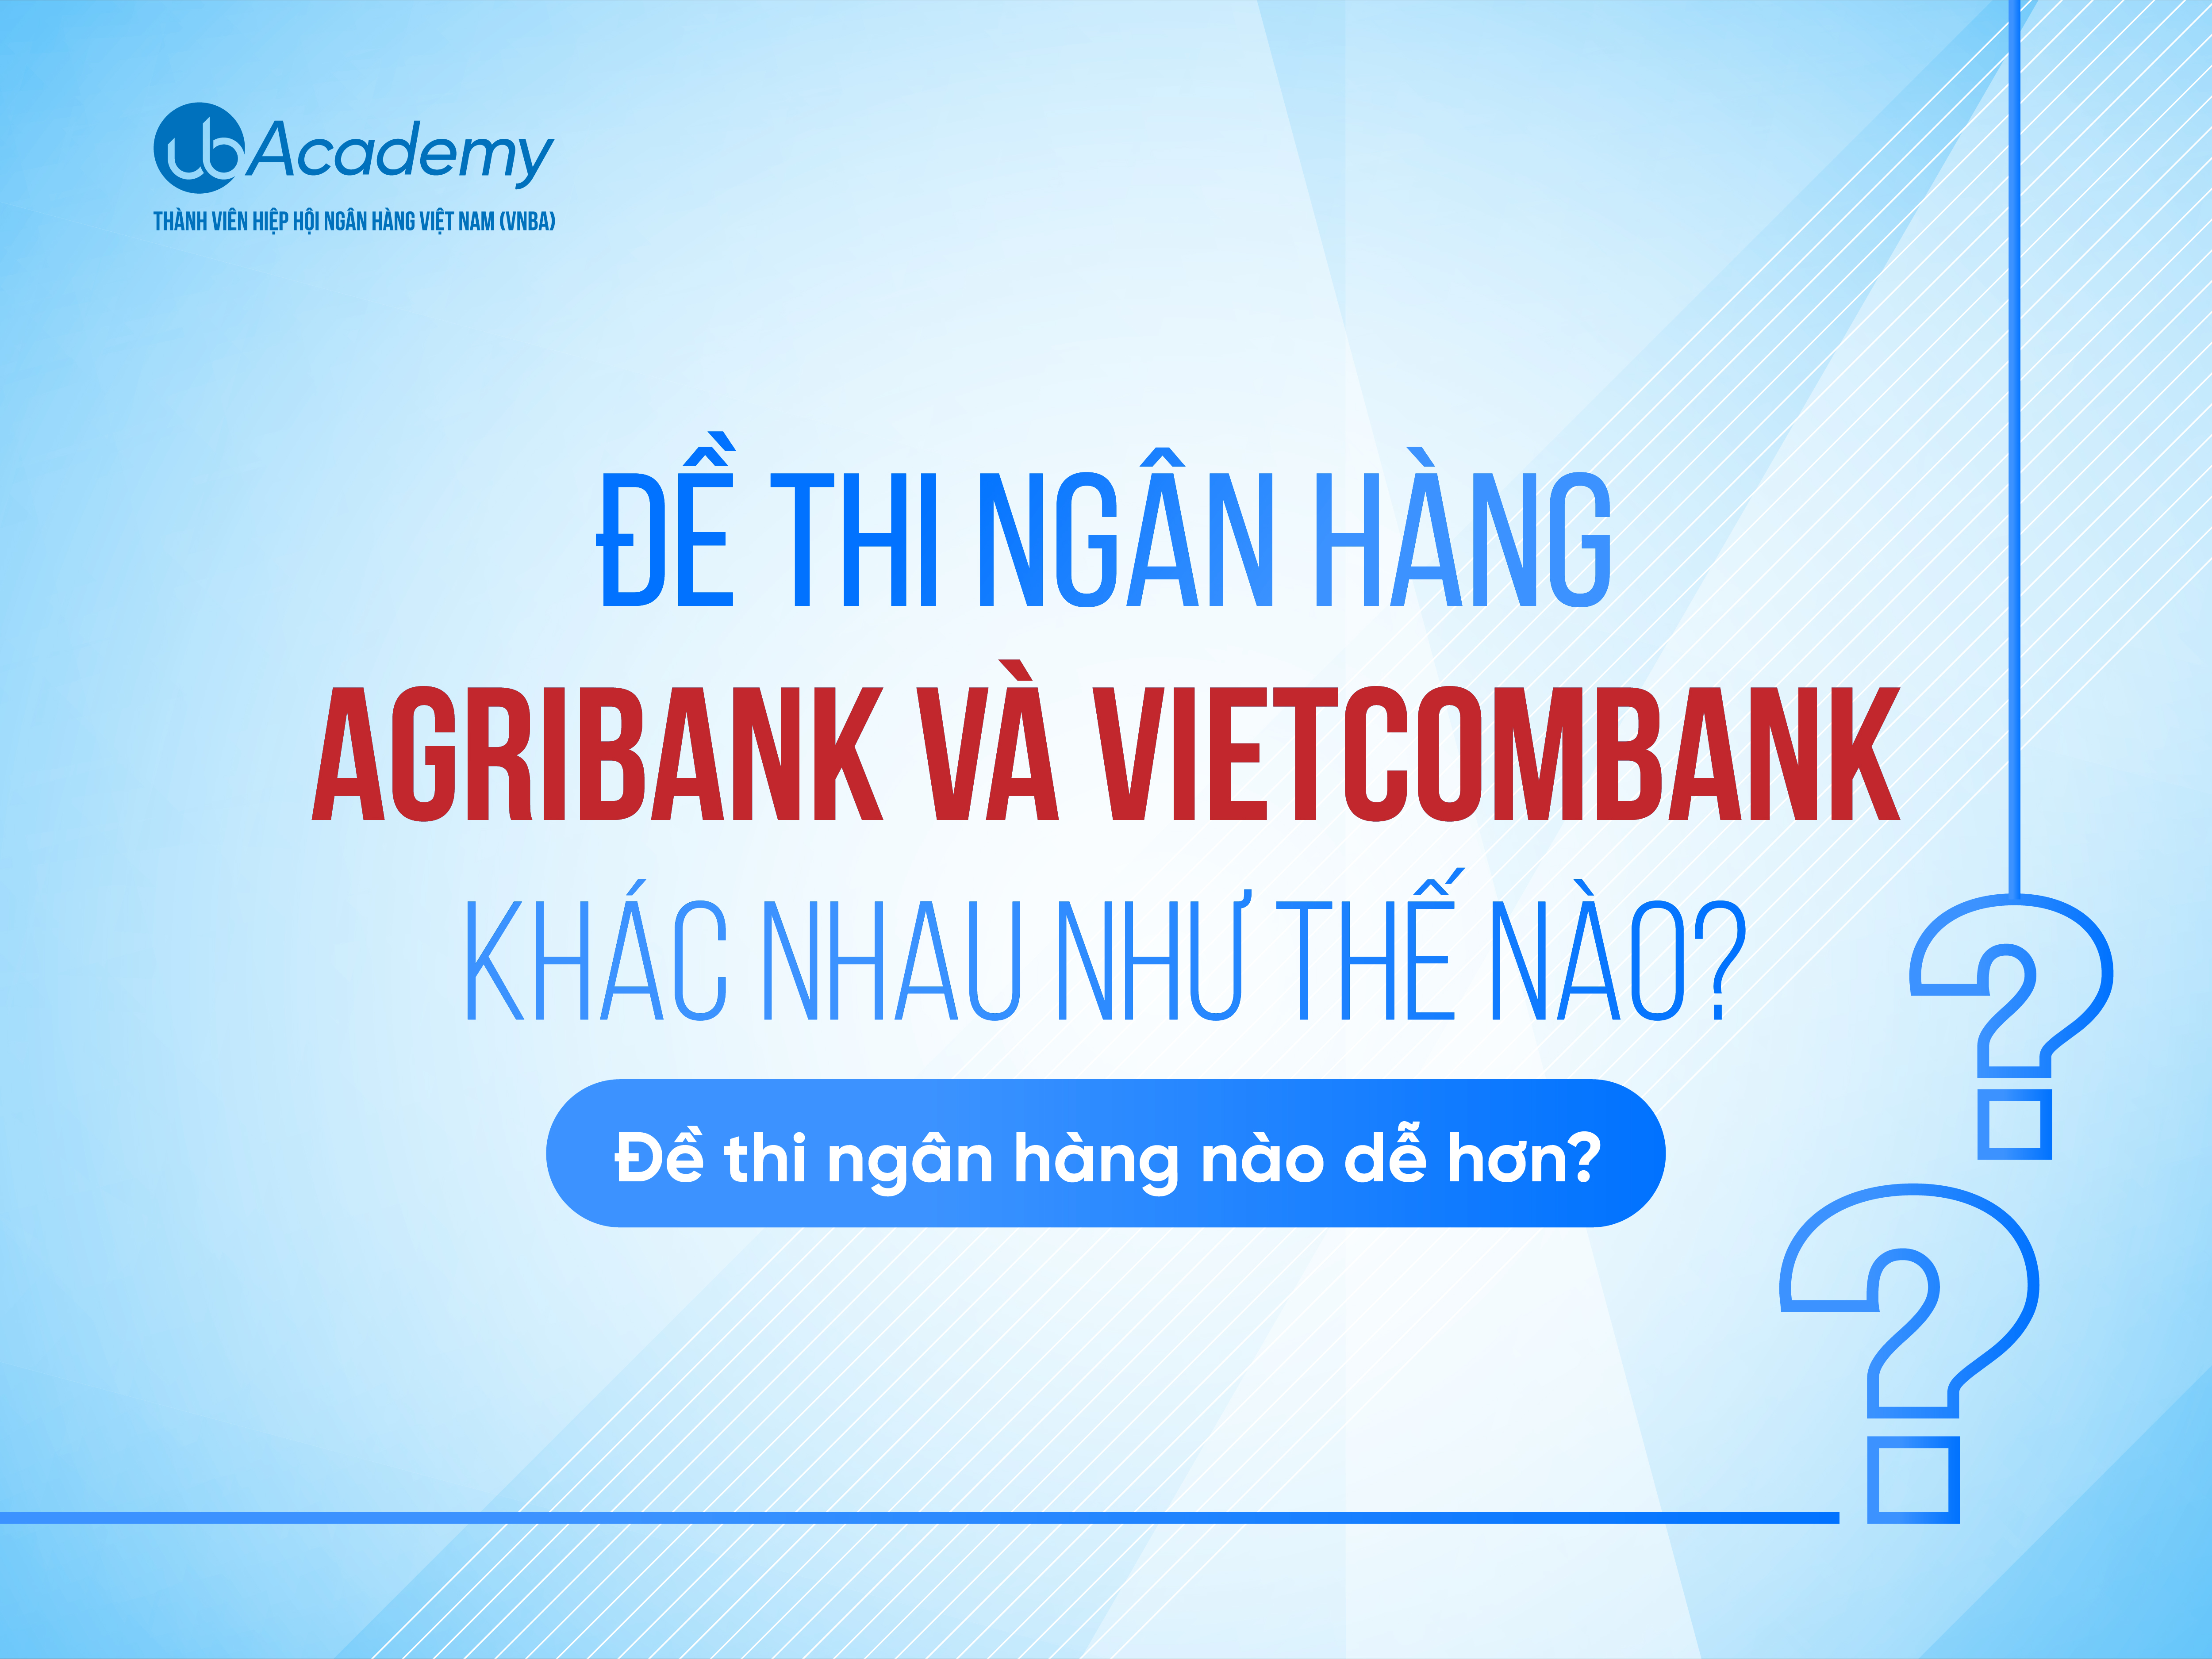 Đề thi ngân hàng Agribank và Vietcombank có gì khác nhau?